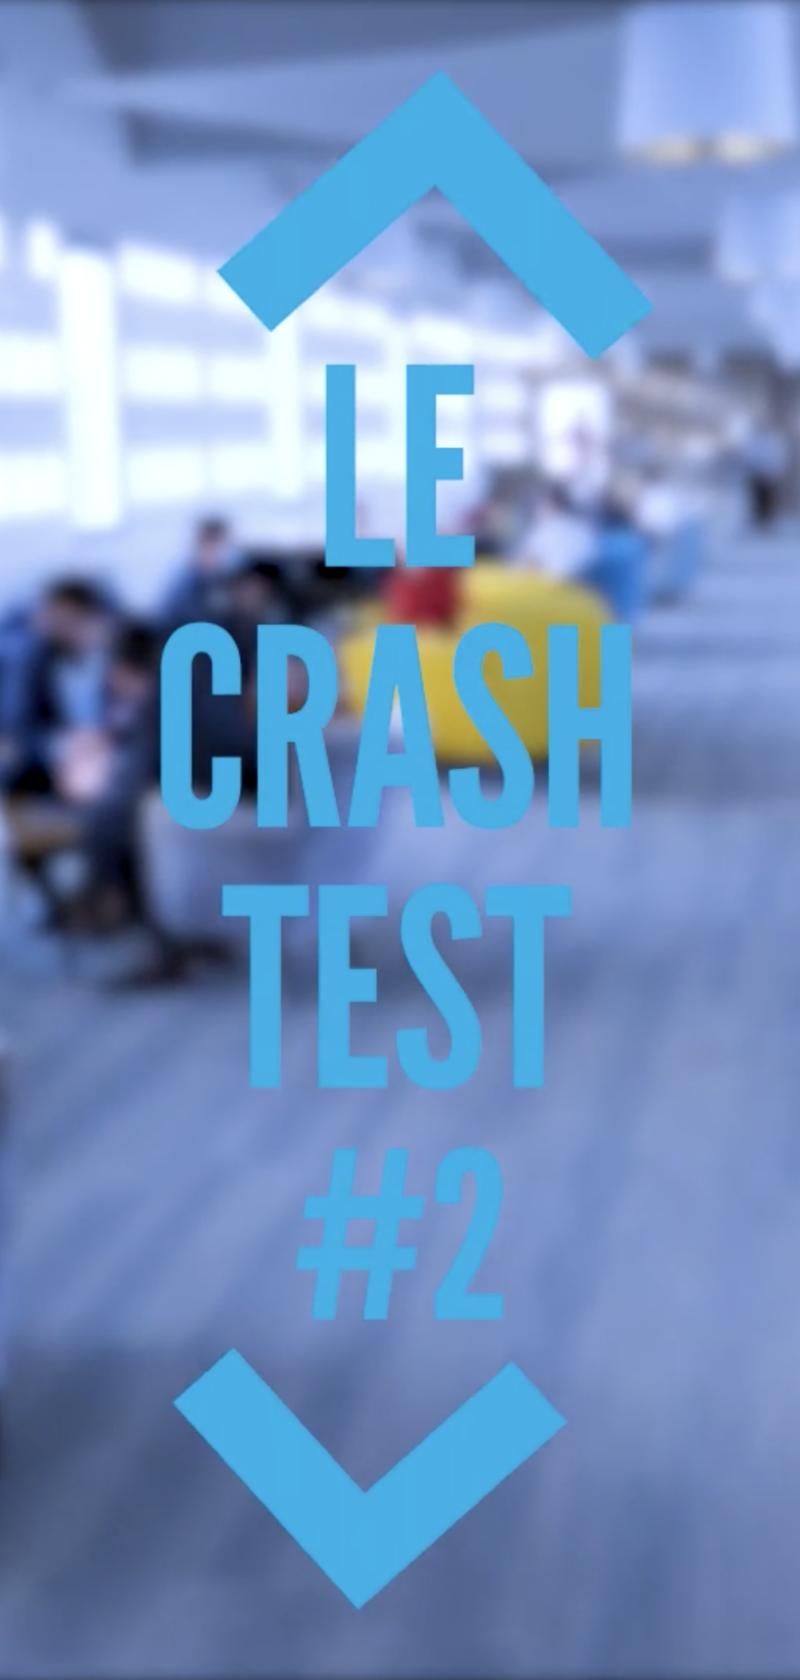 LAB'O Orléans - LE CRASH TEST #2